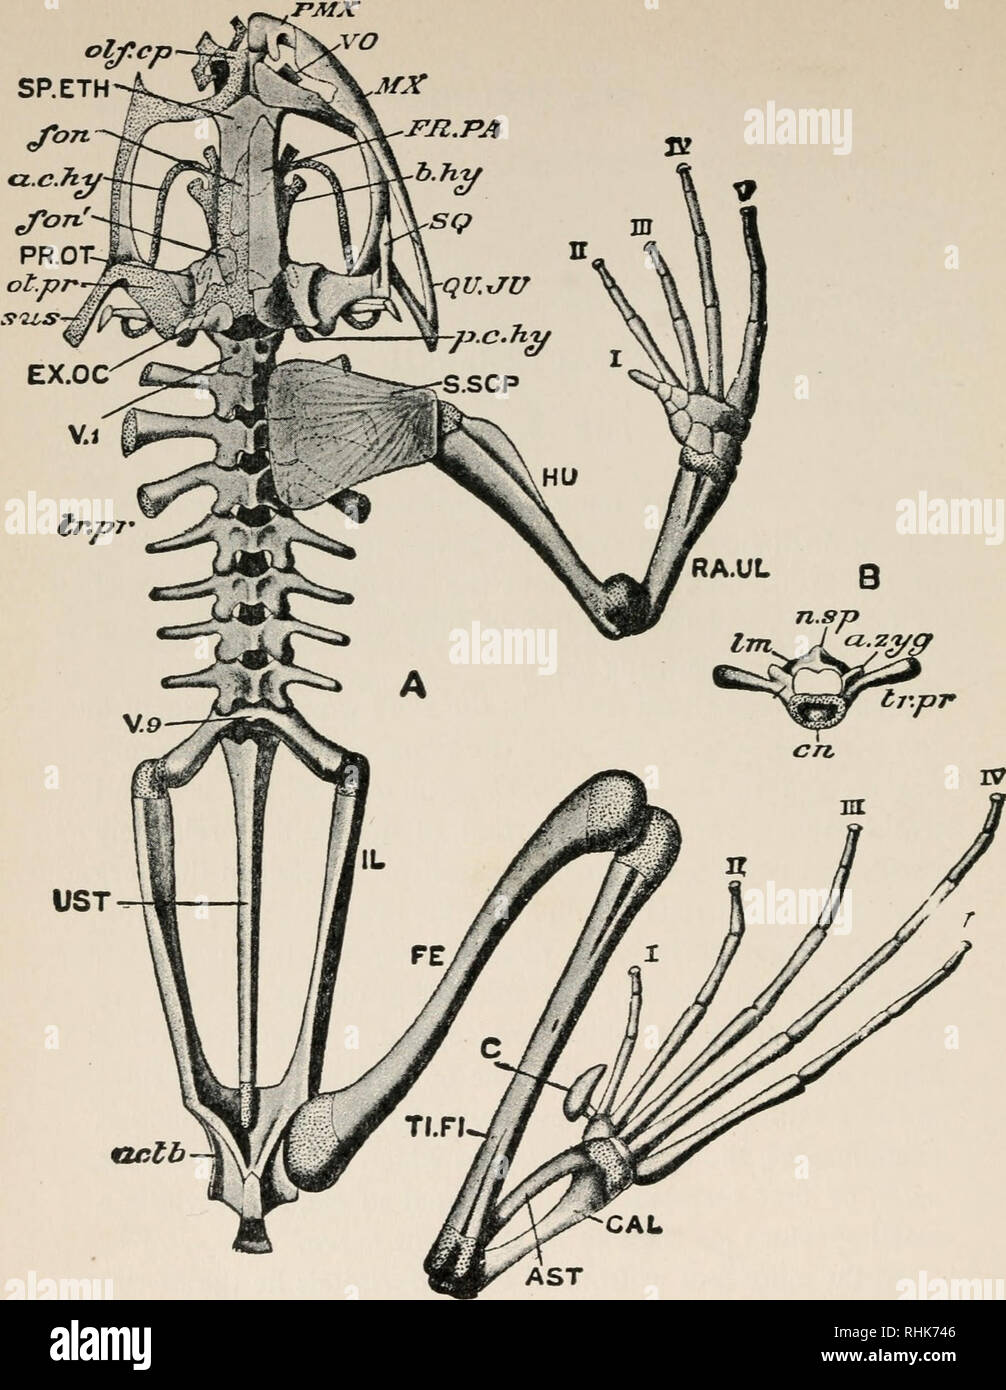 Die Biologie der Frosch. Frösche. UST aclb GAL AST Abb. 63. - Ein, das  Skelett von Rana temporaria. Die linke Gliedmaßen, linke Schulter Gürtel  und Membran Knochen von der linken Seite